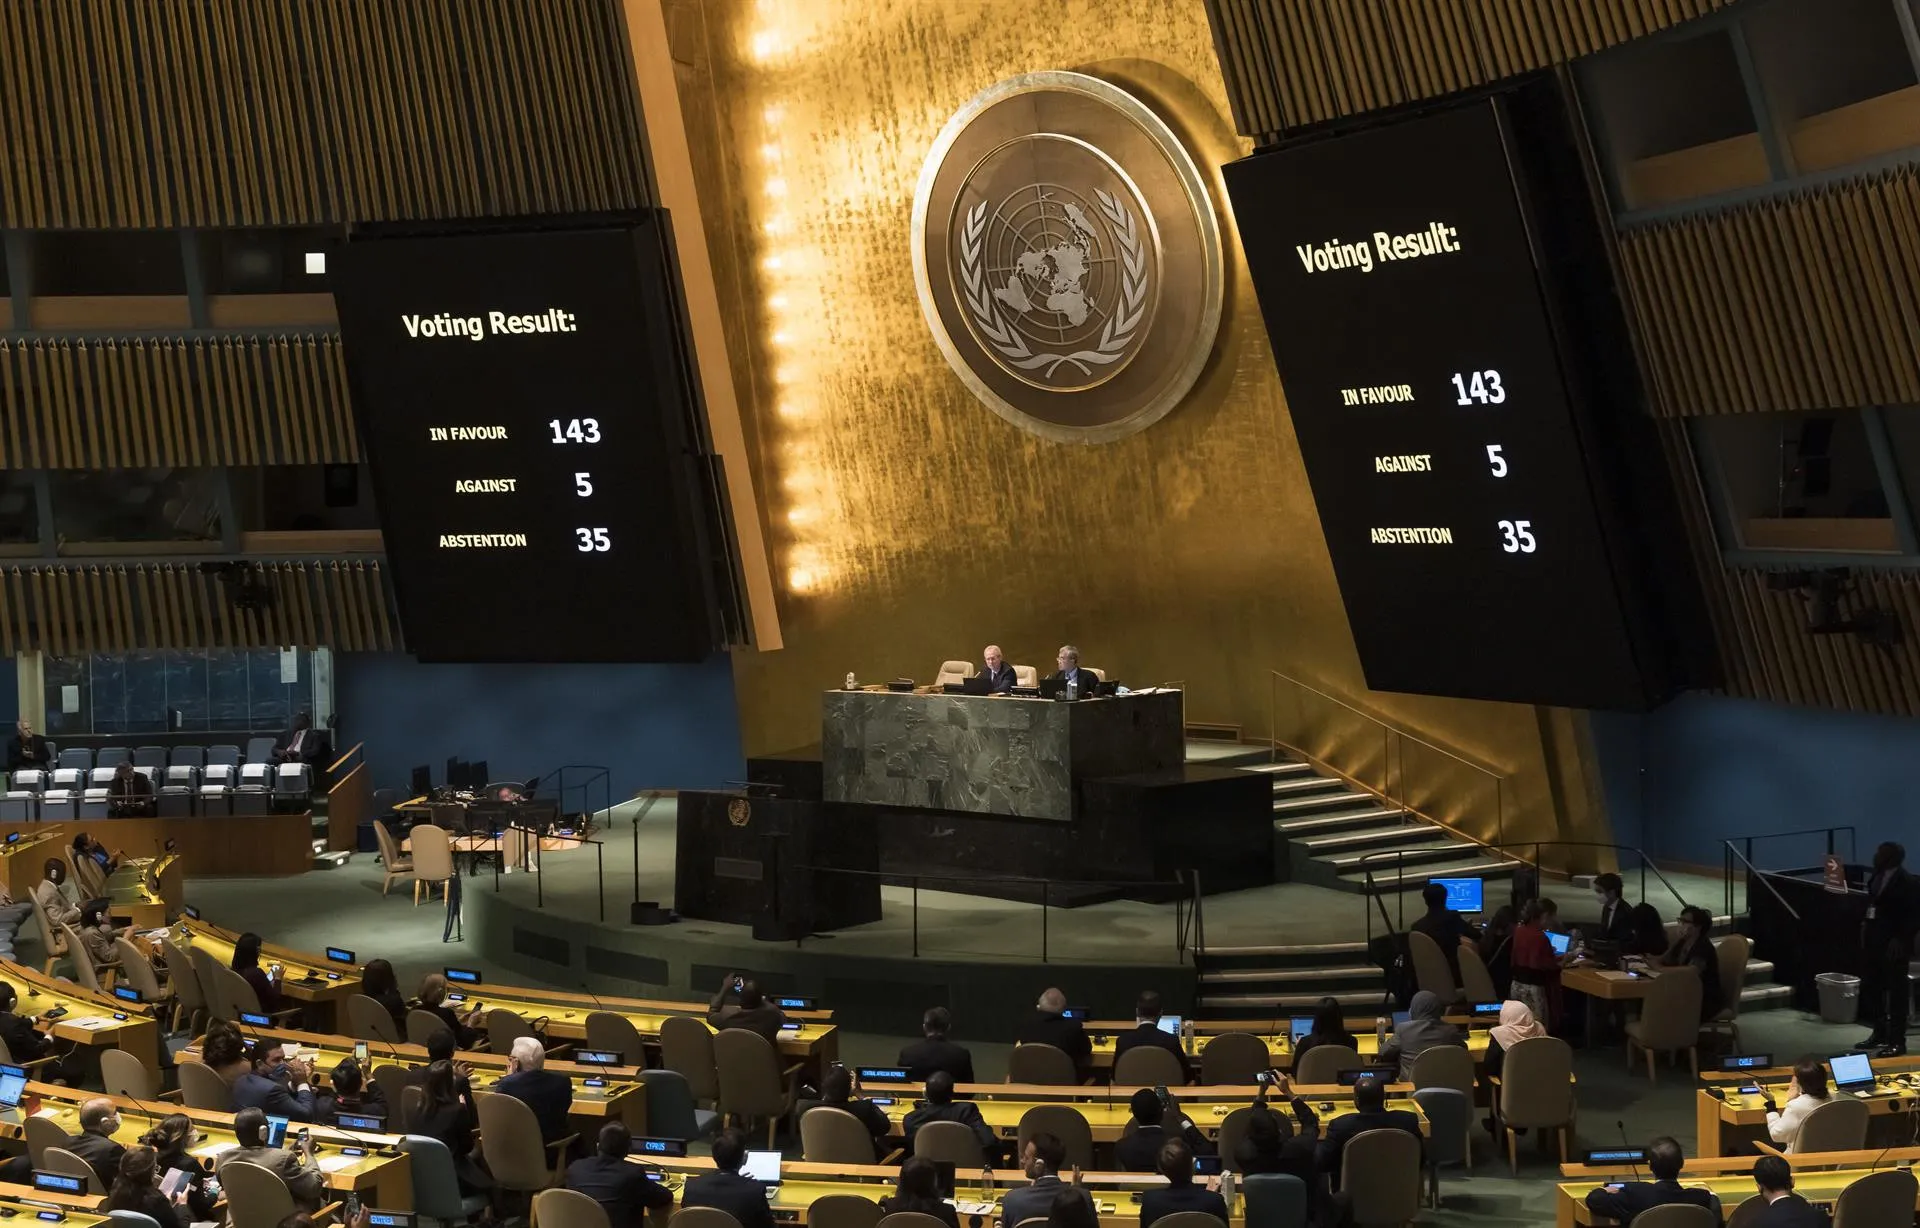 La ONU condena con mayoría contundente las anexiones rusas en Ucrania